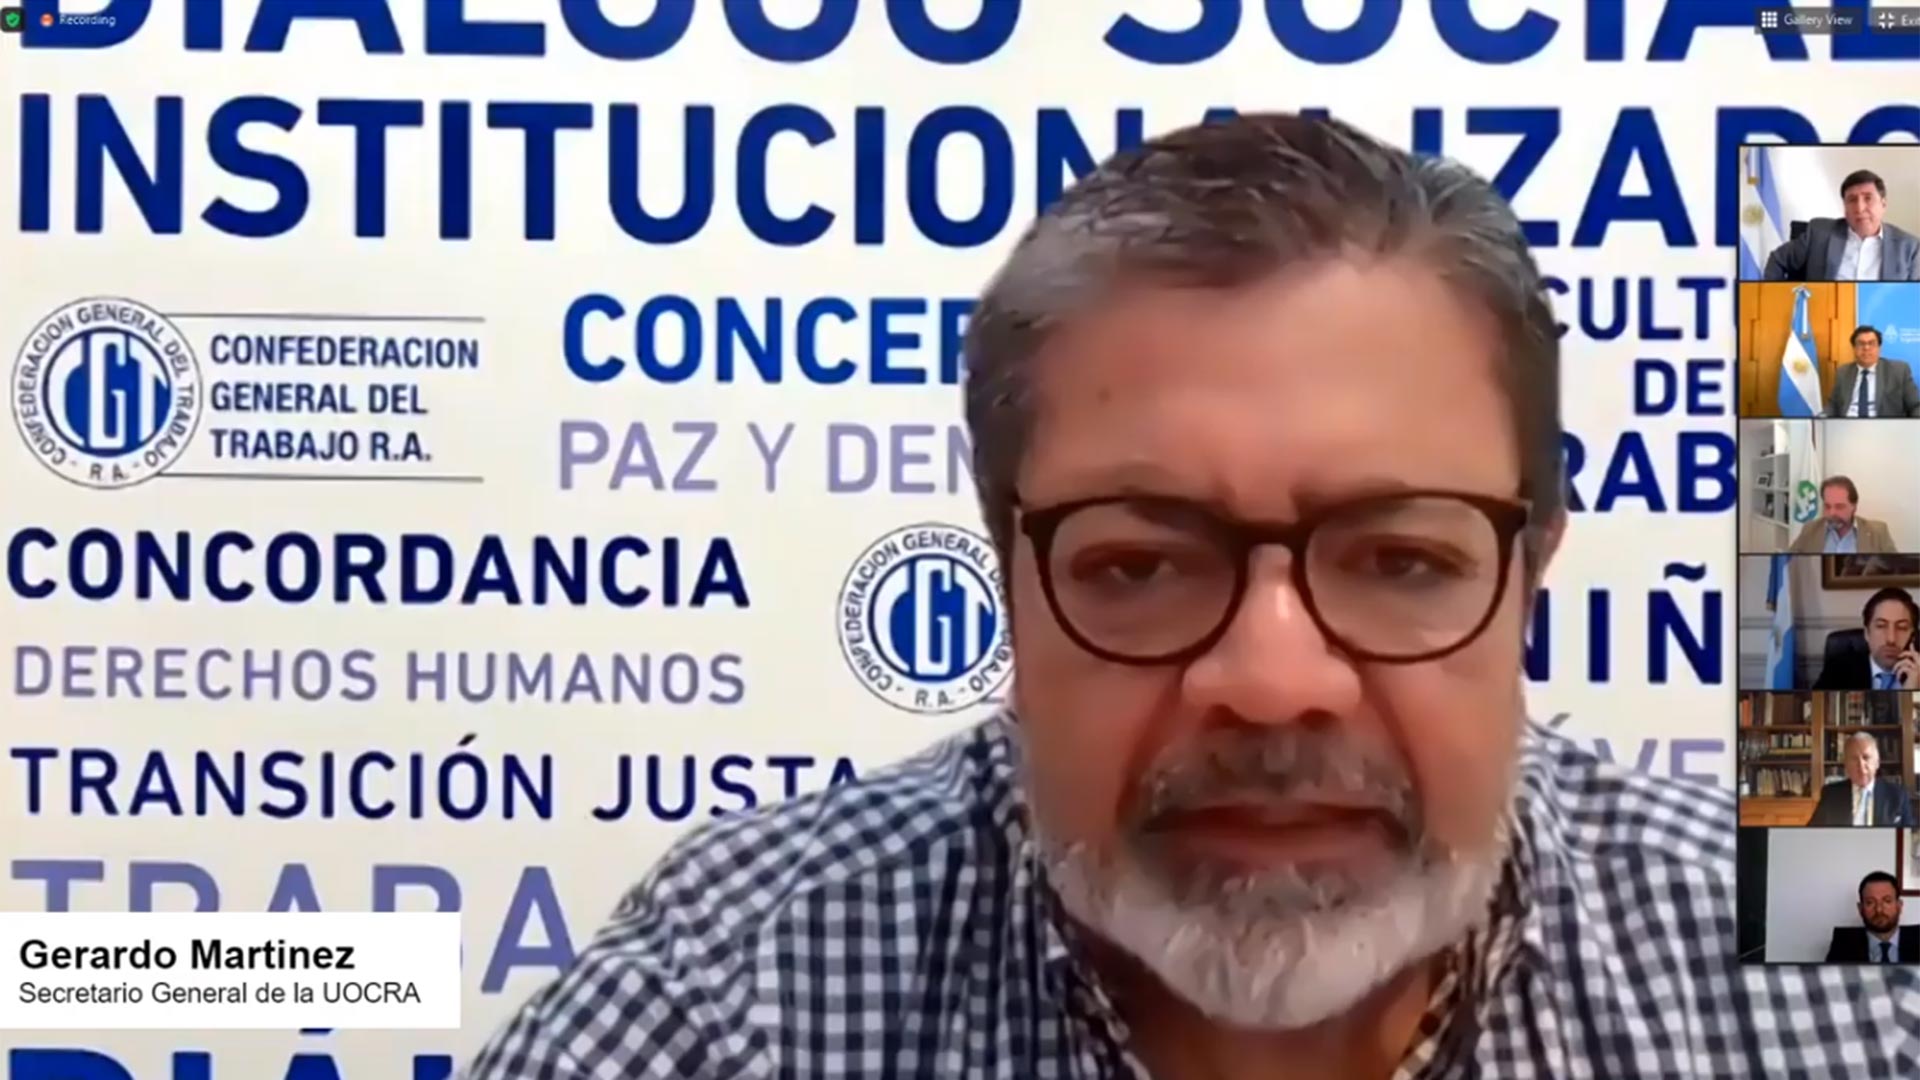 Gerardo Martinez - Secretario General de la UOCRA